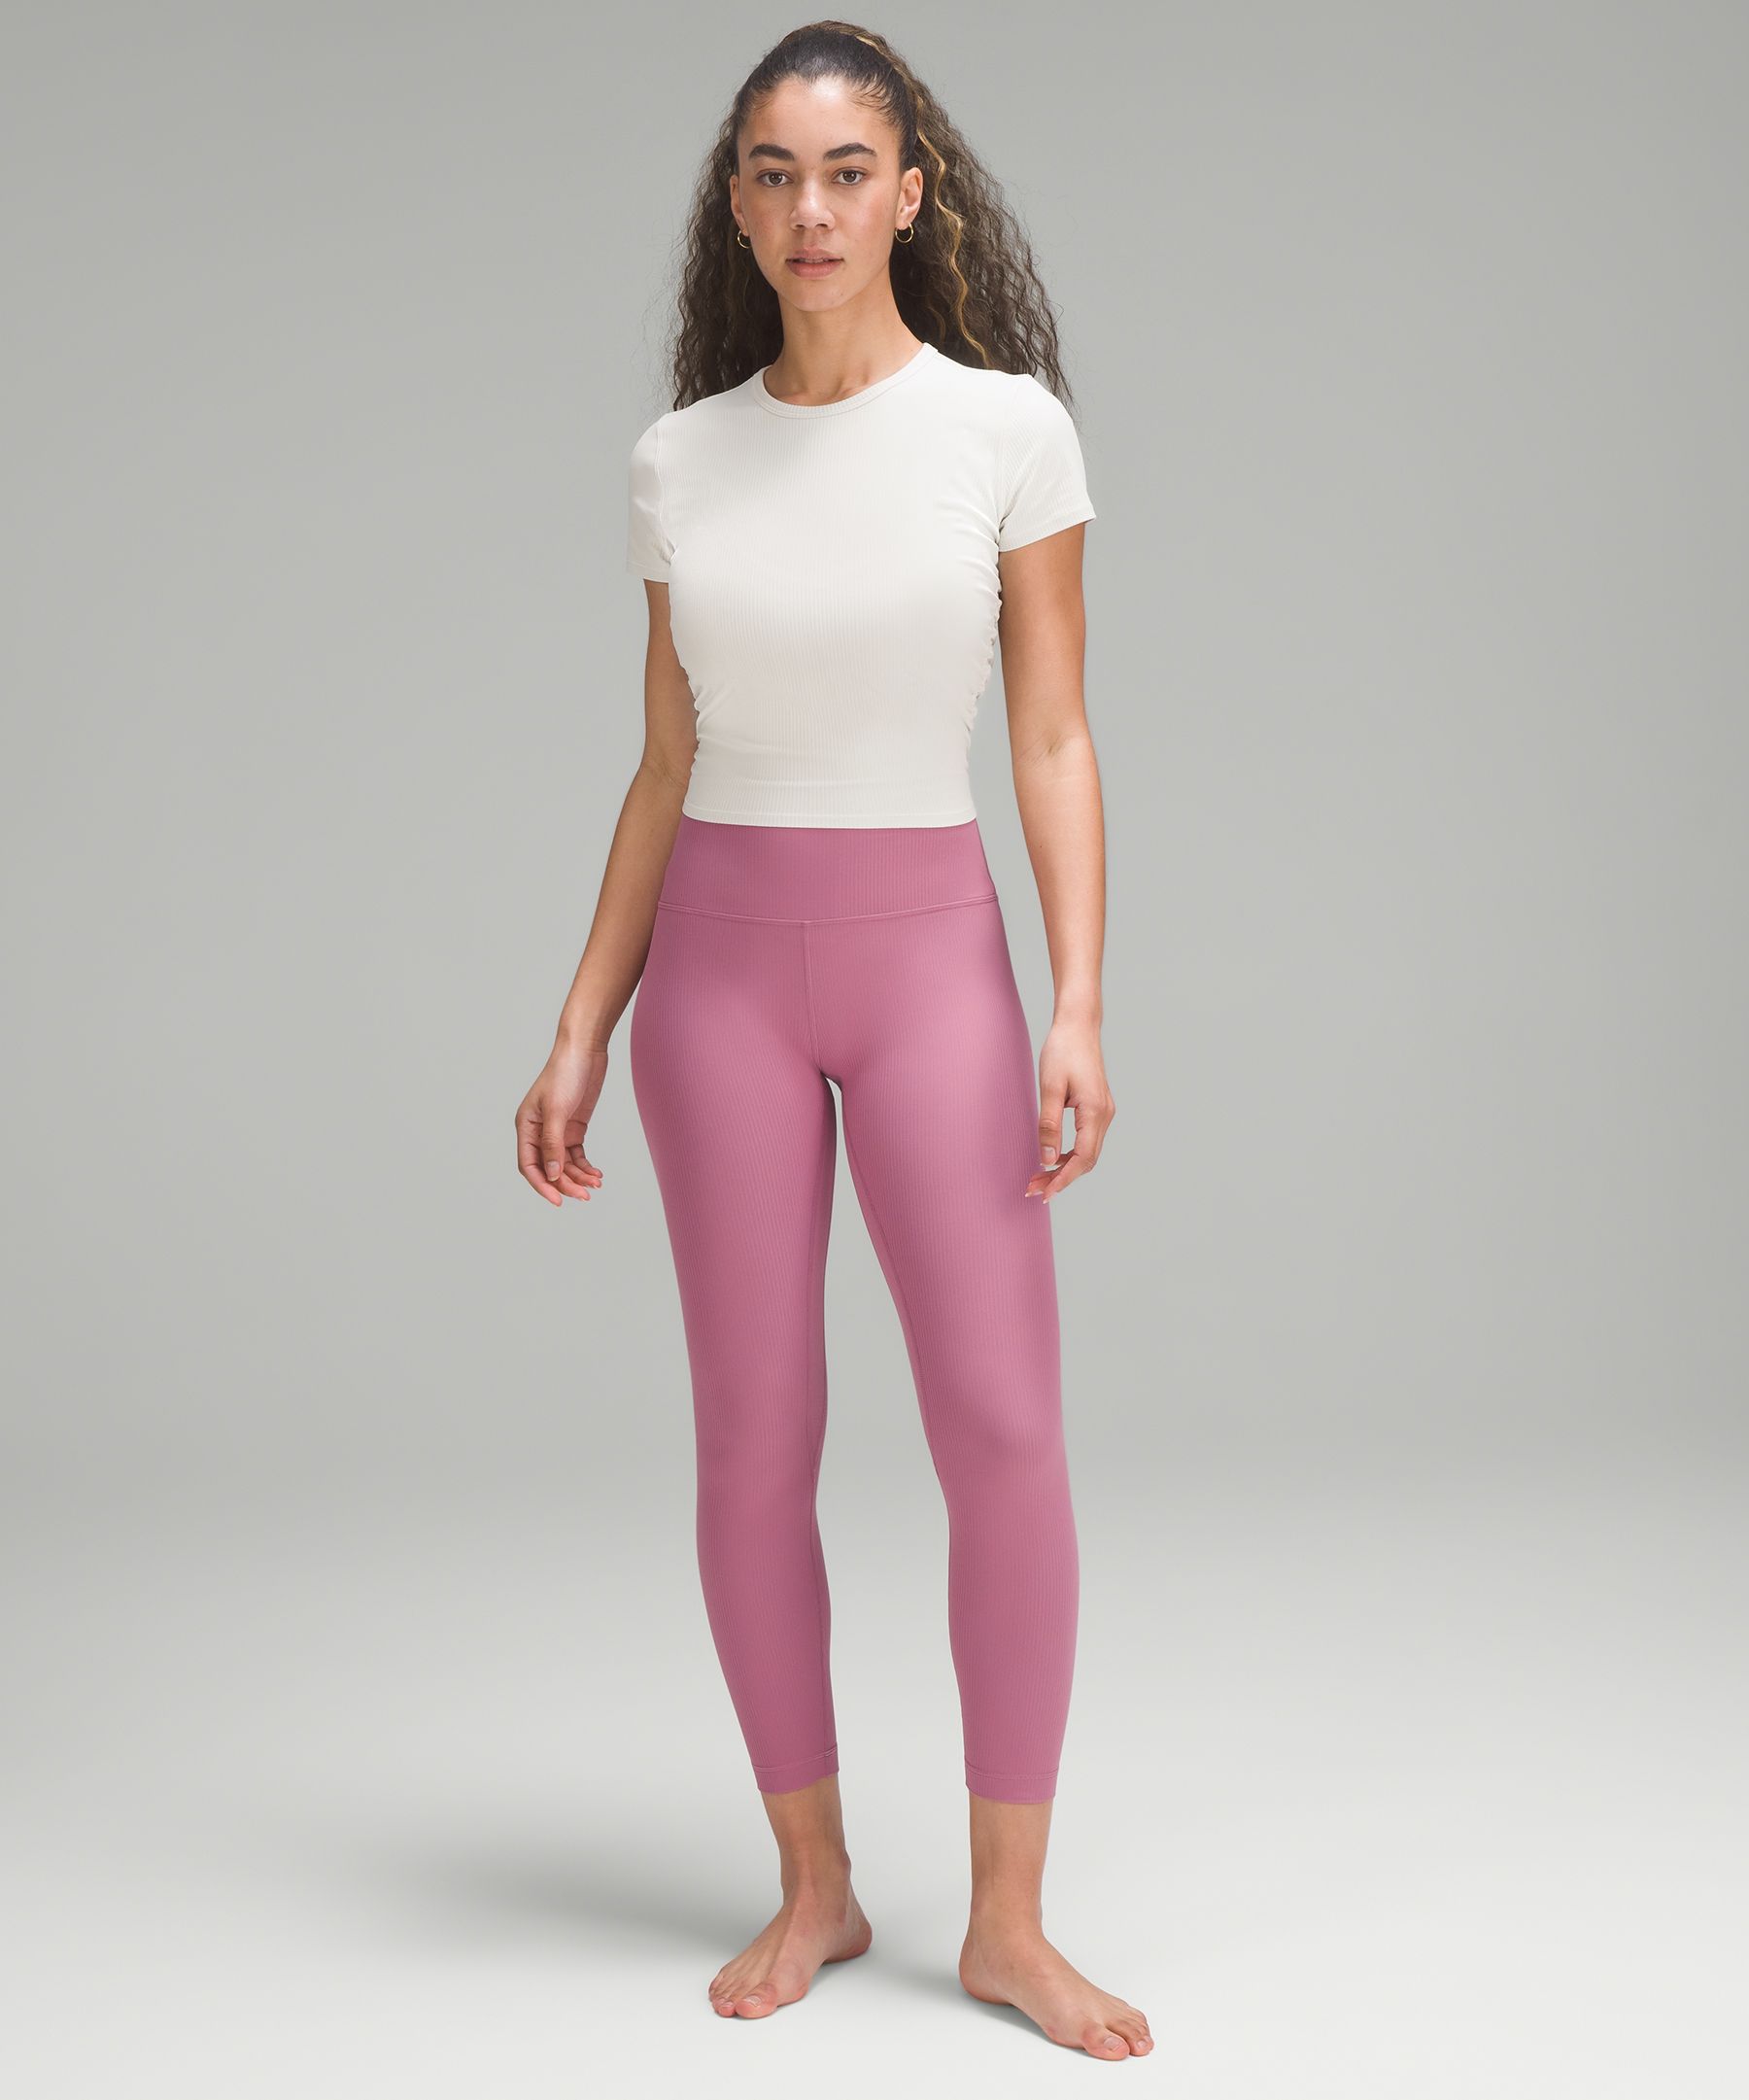 ❤️ NEW Lululemon Align Pant HR 25 - Size 4 Wisteria Purple Nulu Yoga  Tights NWT